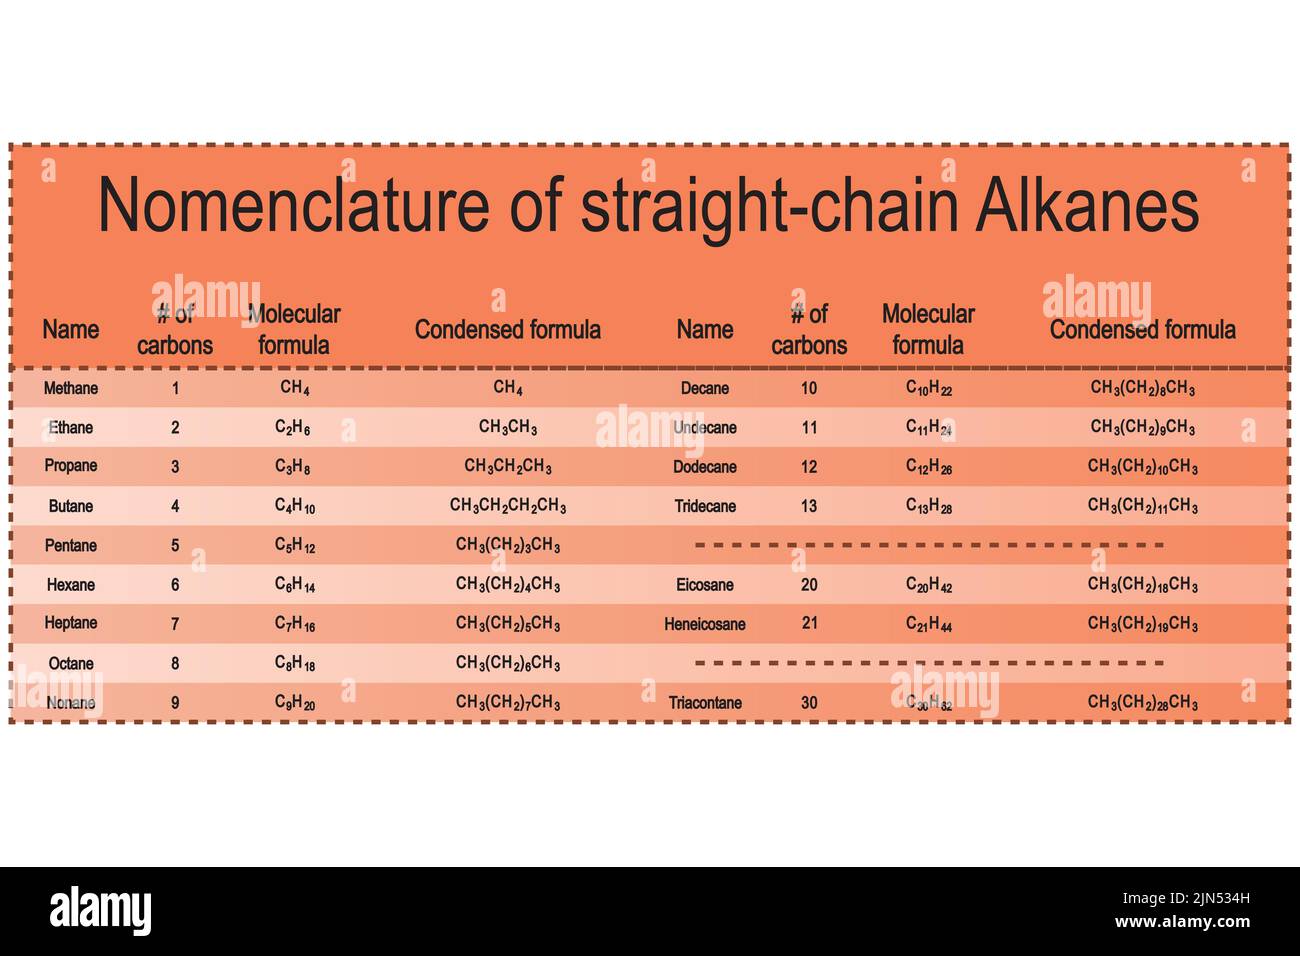 Tabelle der Nomenklatur der geradkettigen Alkane - Methan durch Tridecan. Ausbildung zur organischen Chemie - orange. Stock Vektor